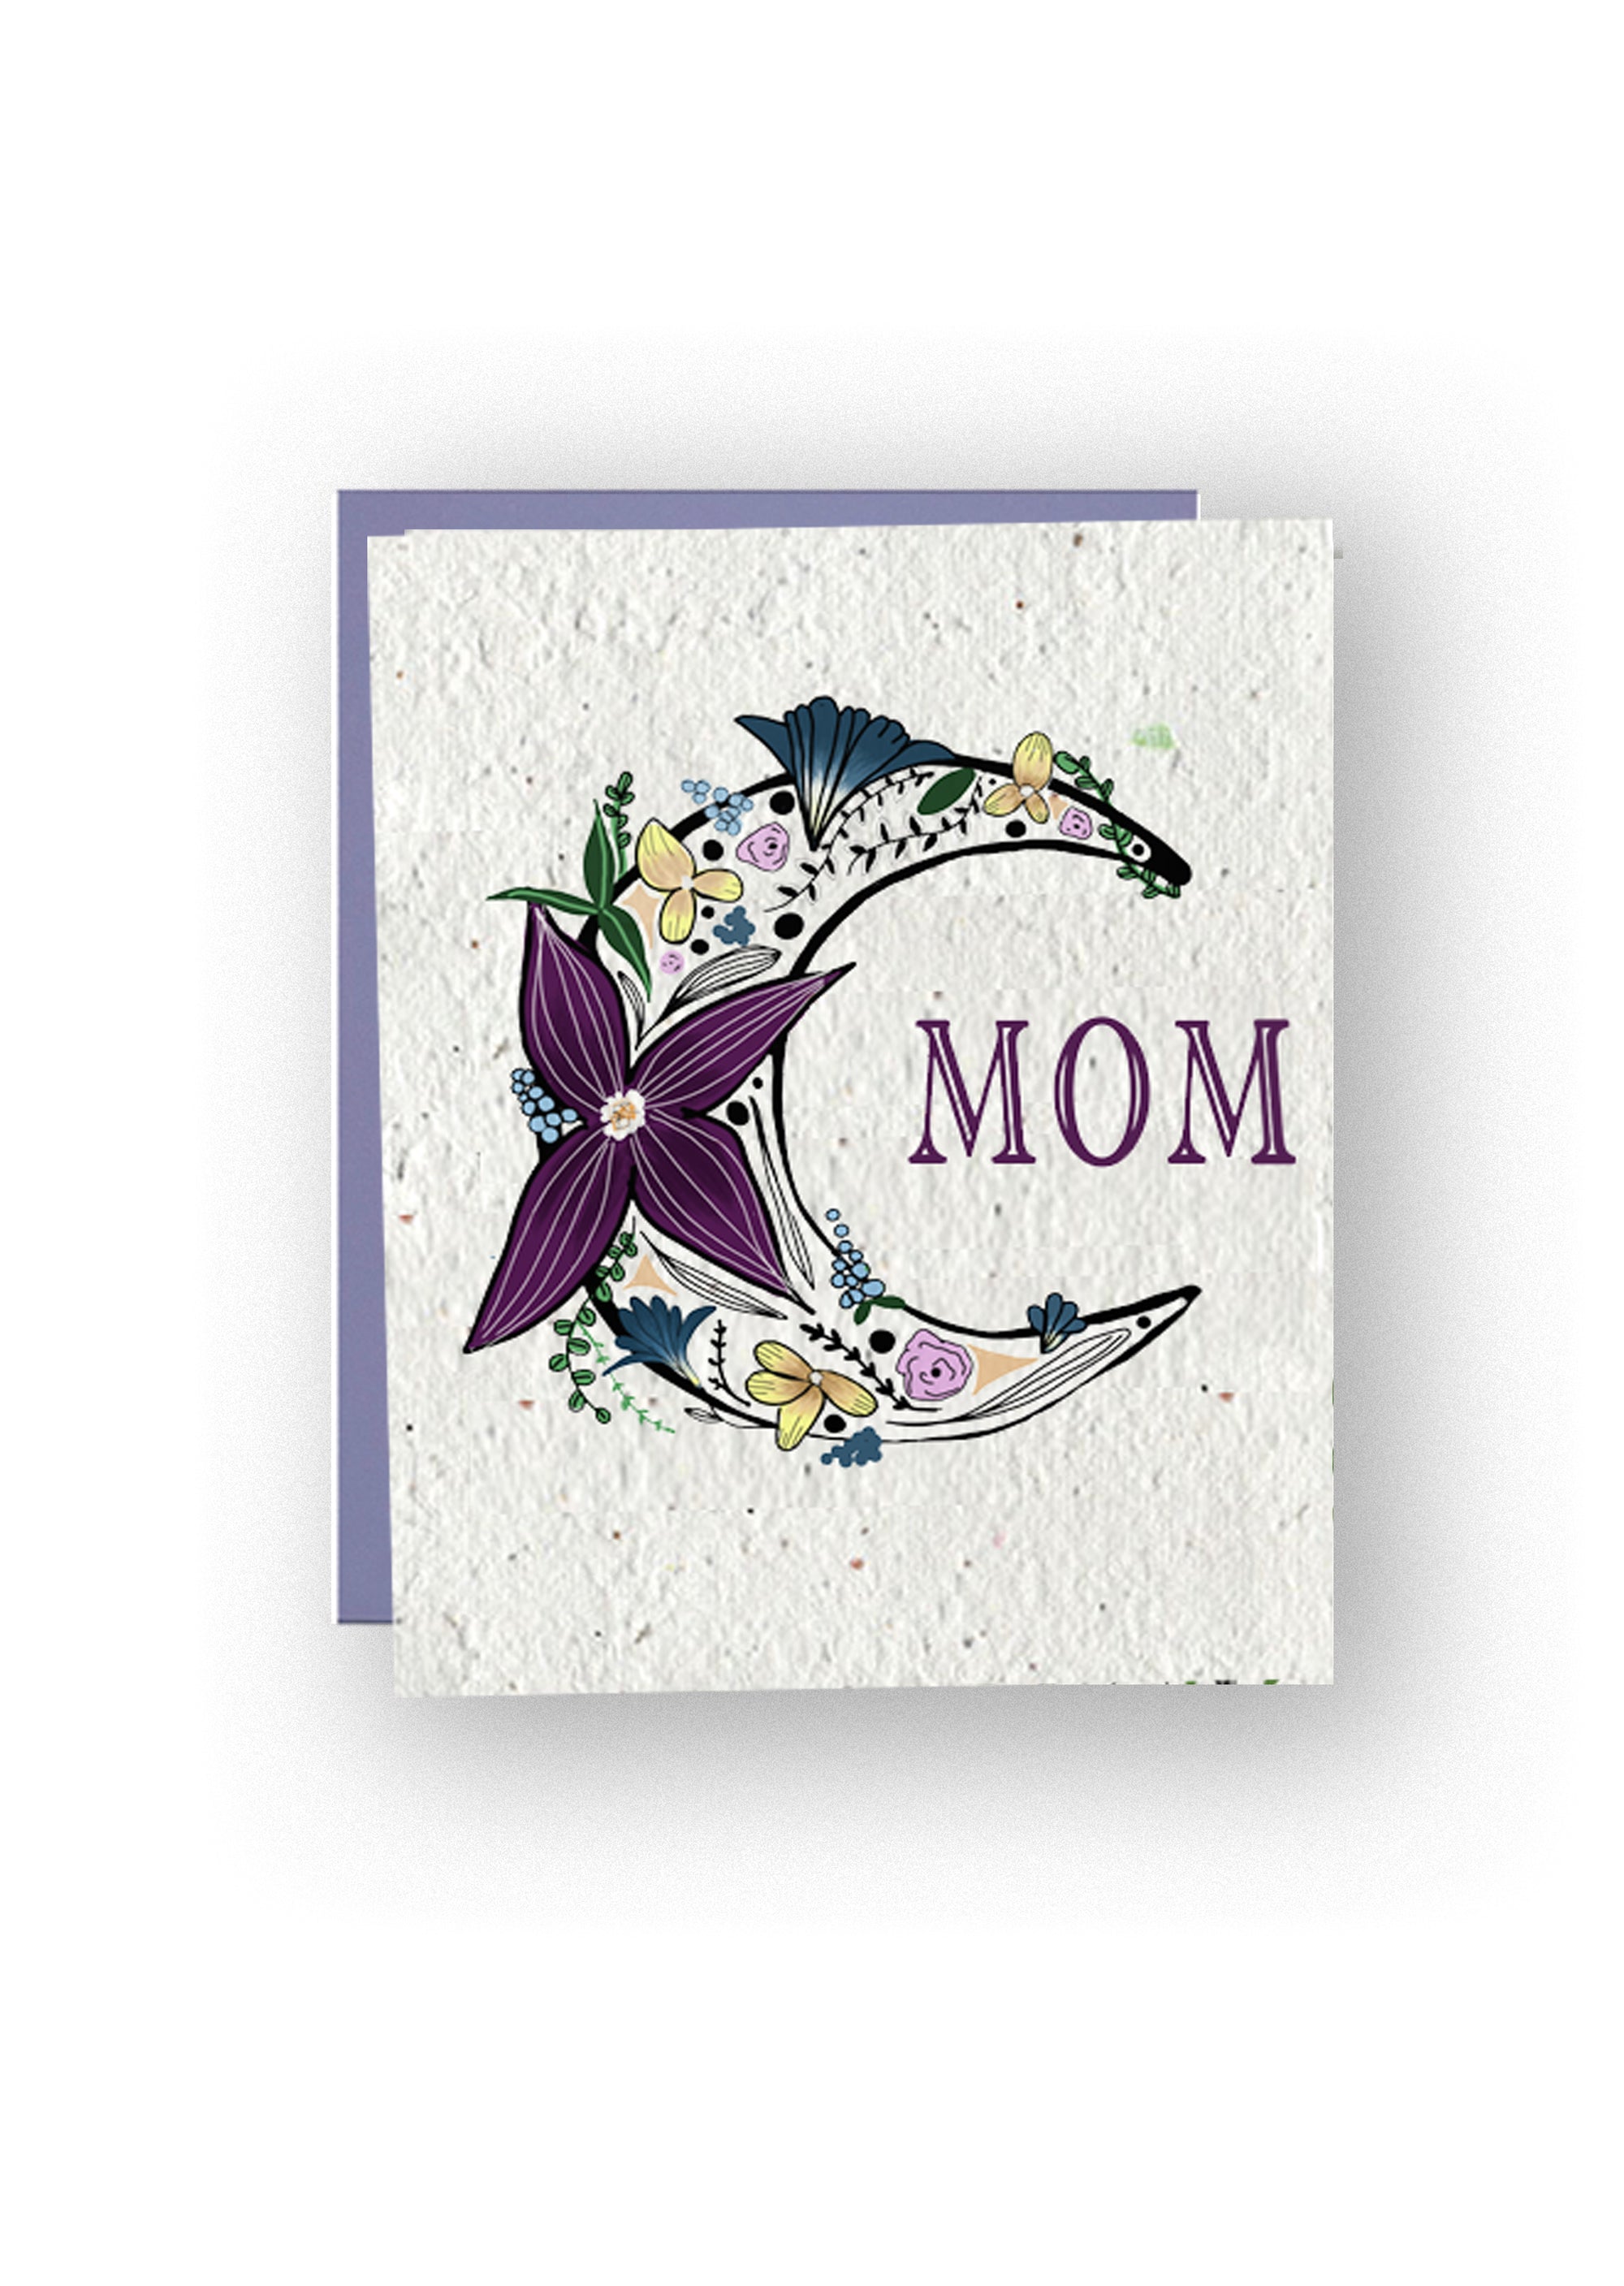 Moonlit Blooms: Wildflower Seed Paper MOM Card